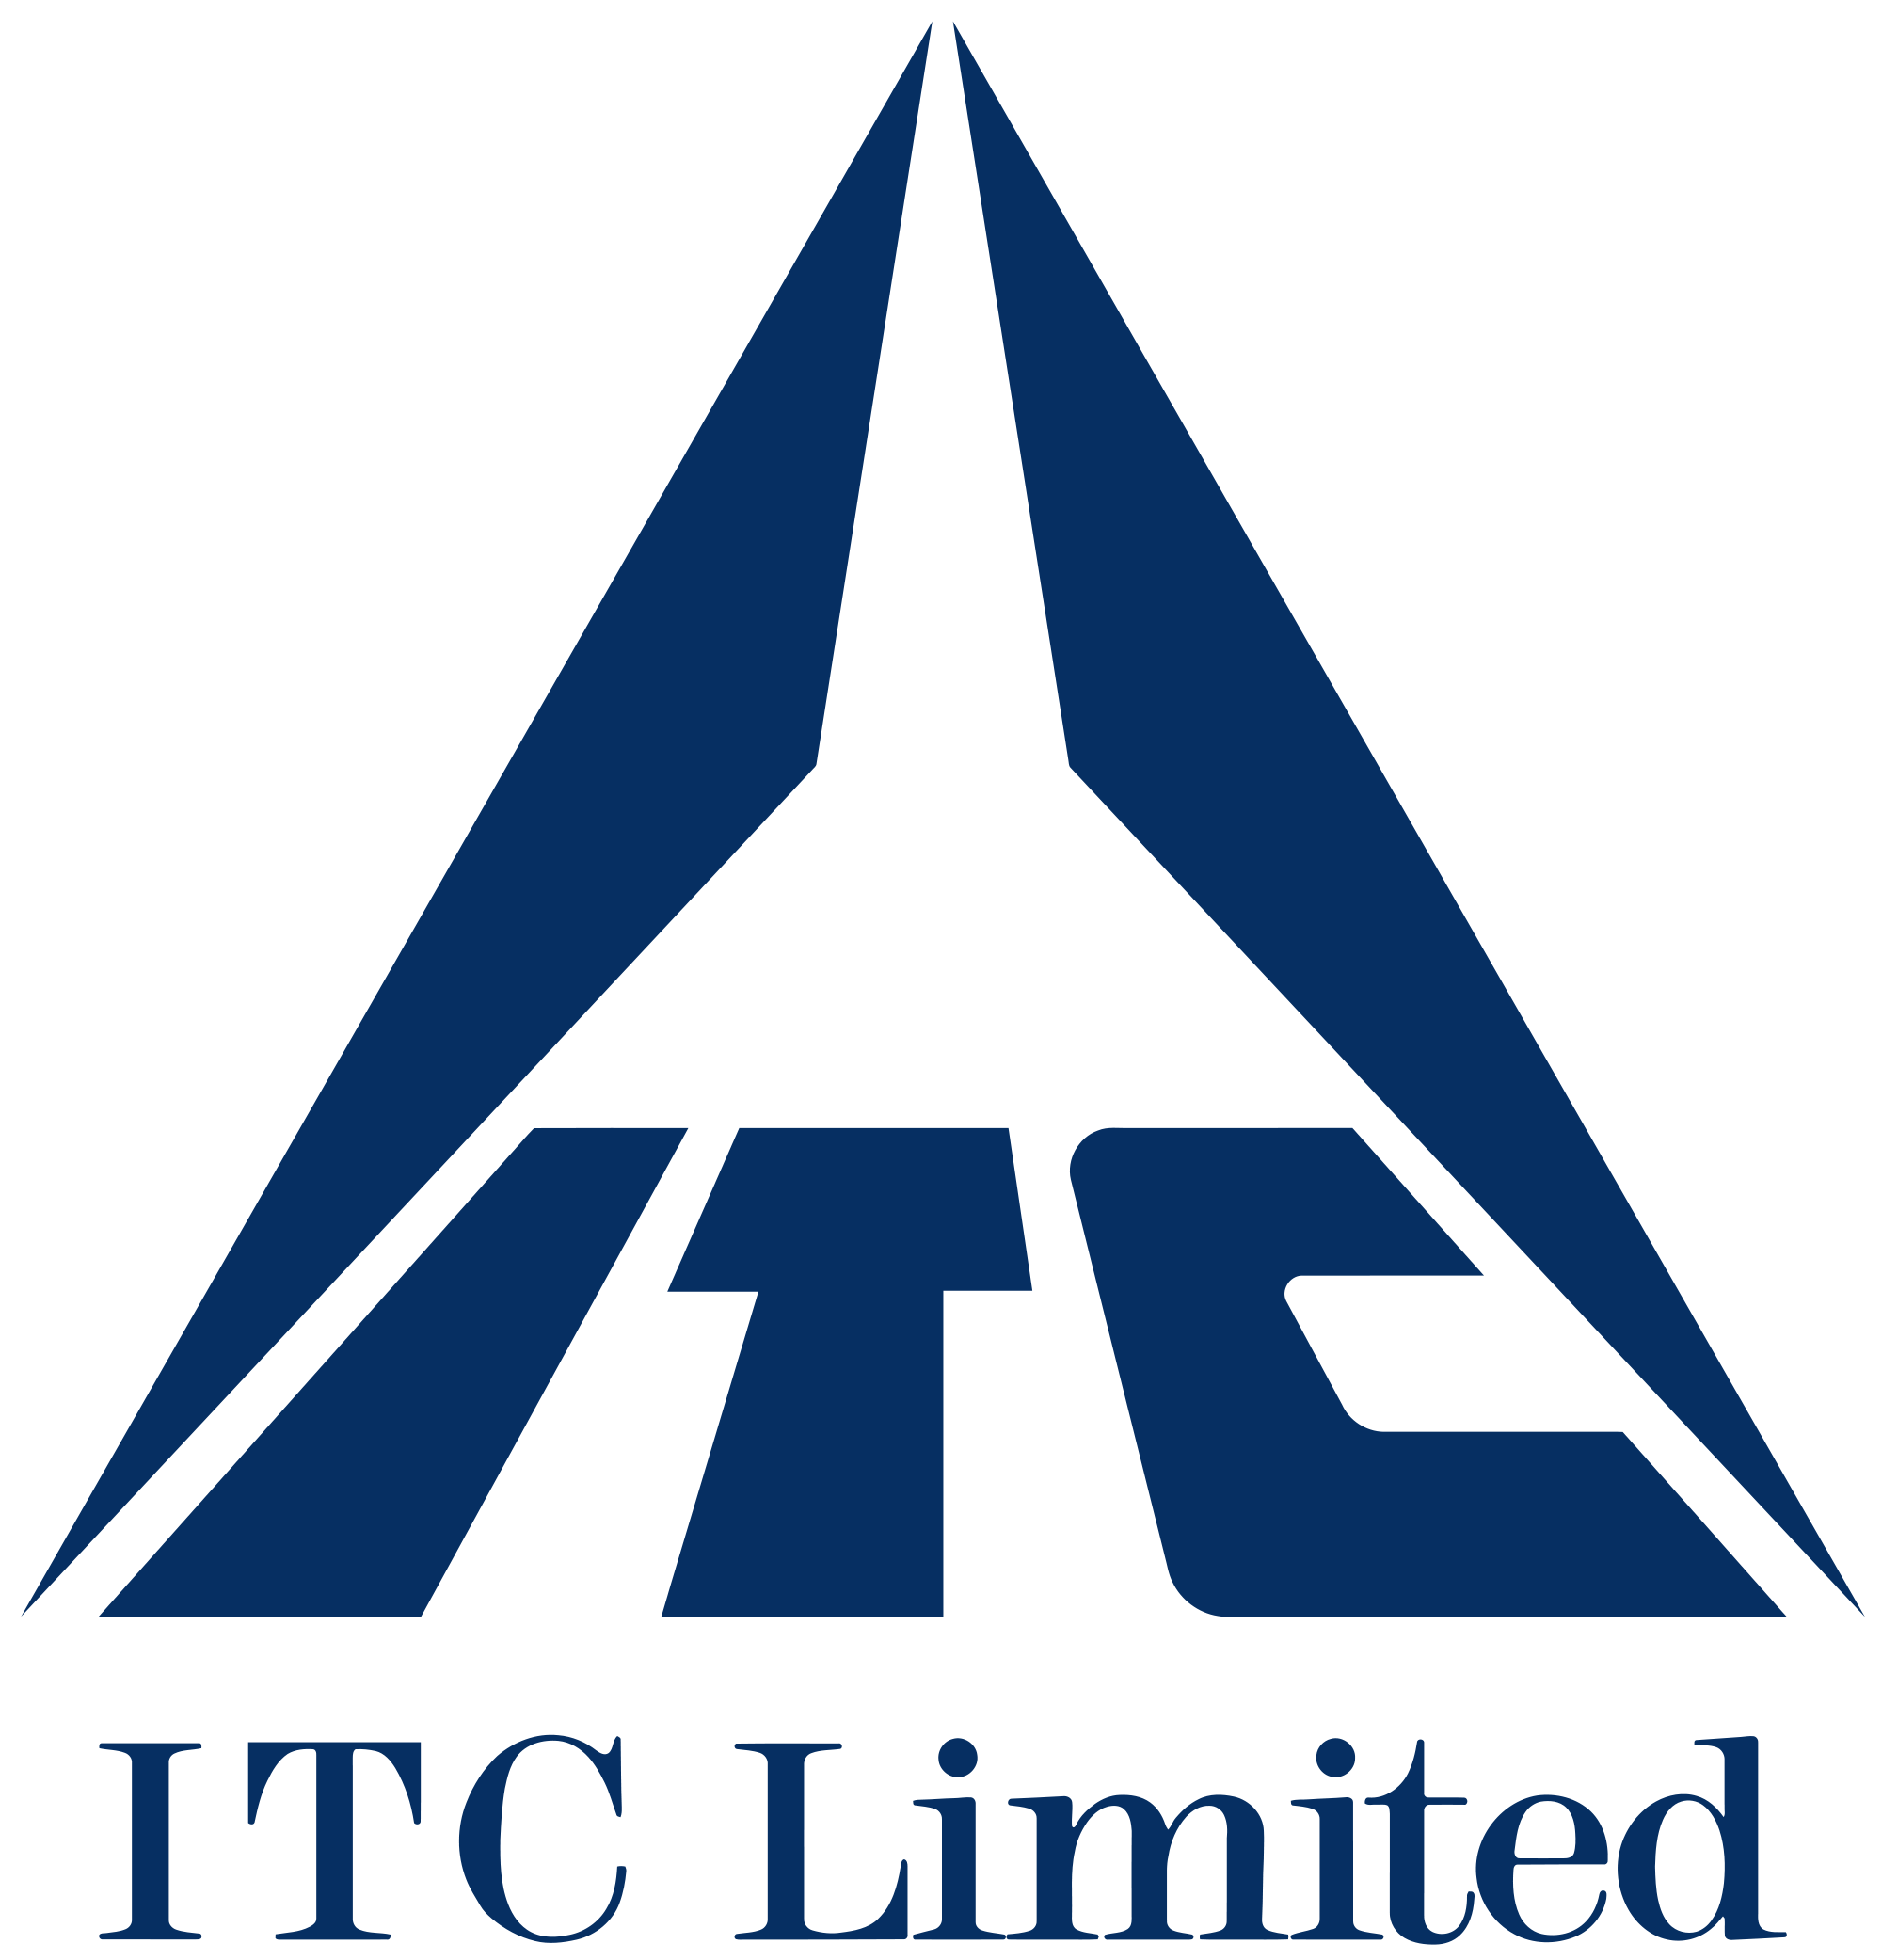 ITC Logo - ITC Limited Logo.svg